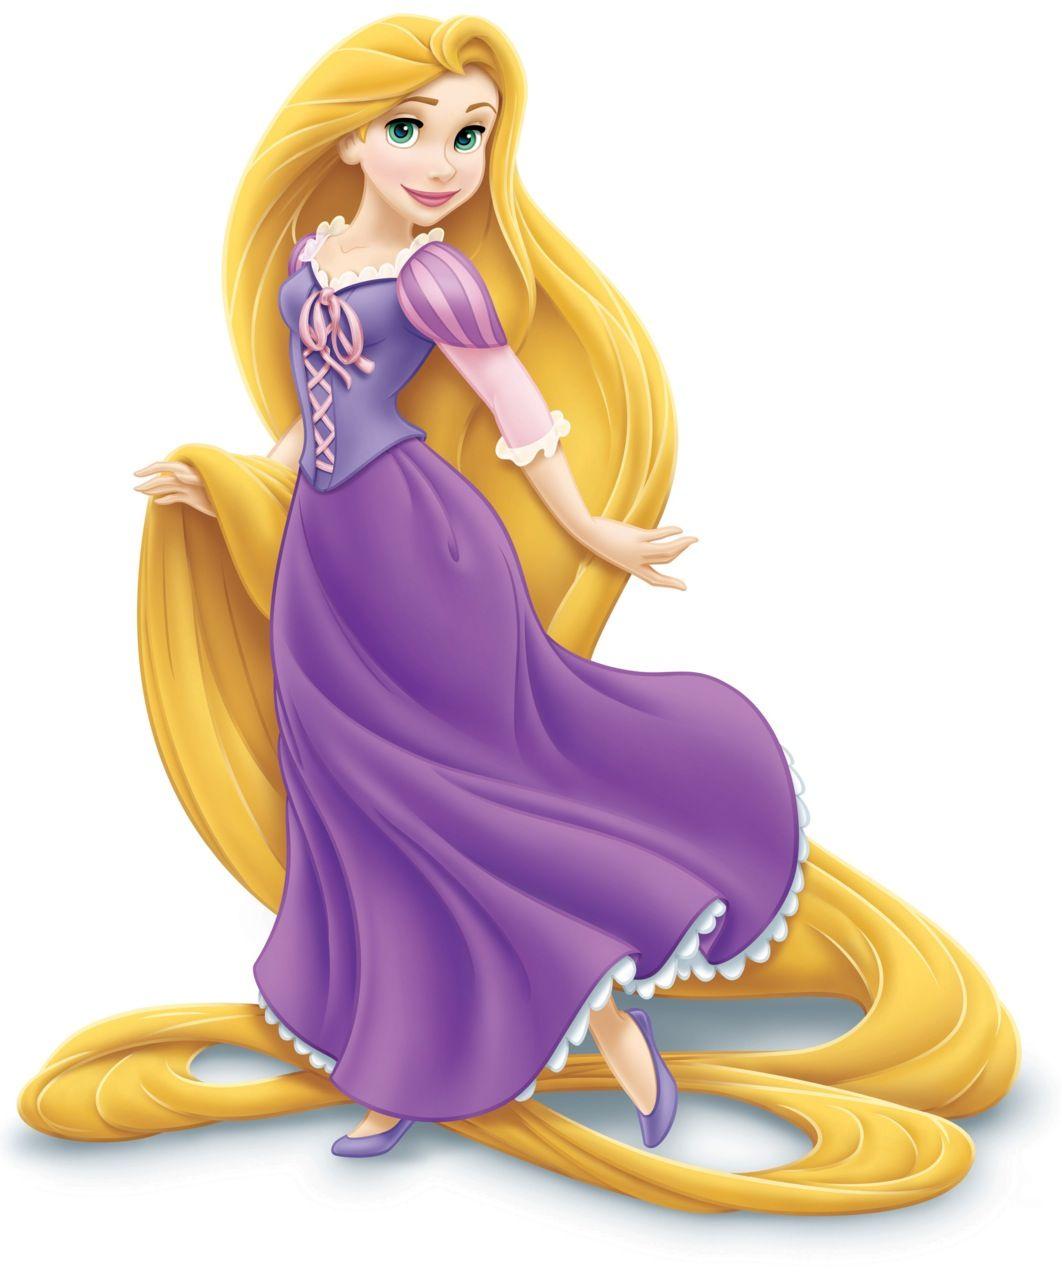 Disney Princess Rapunzel Wallpaper XXL. Great KidsBedrooms